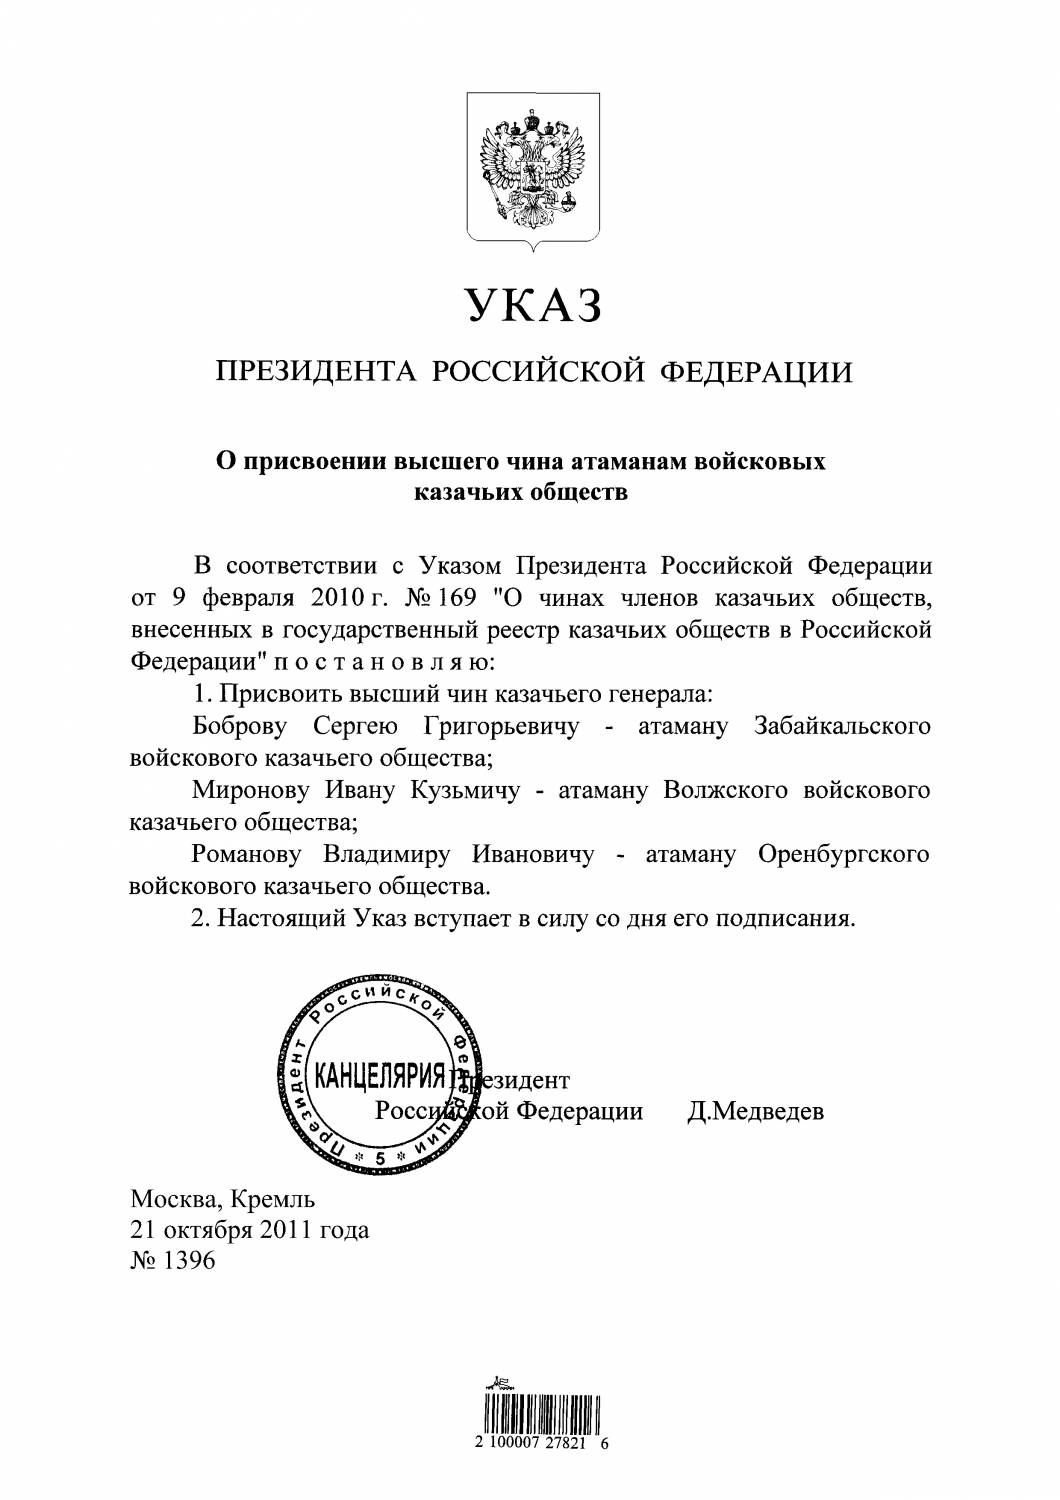 Указ о присвоении высшего чина атаманам войсковых казачьих обществ